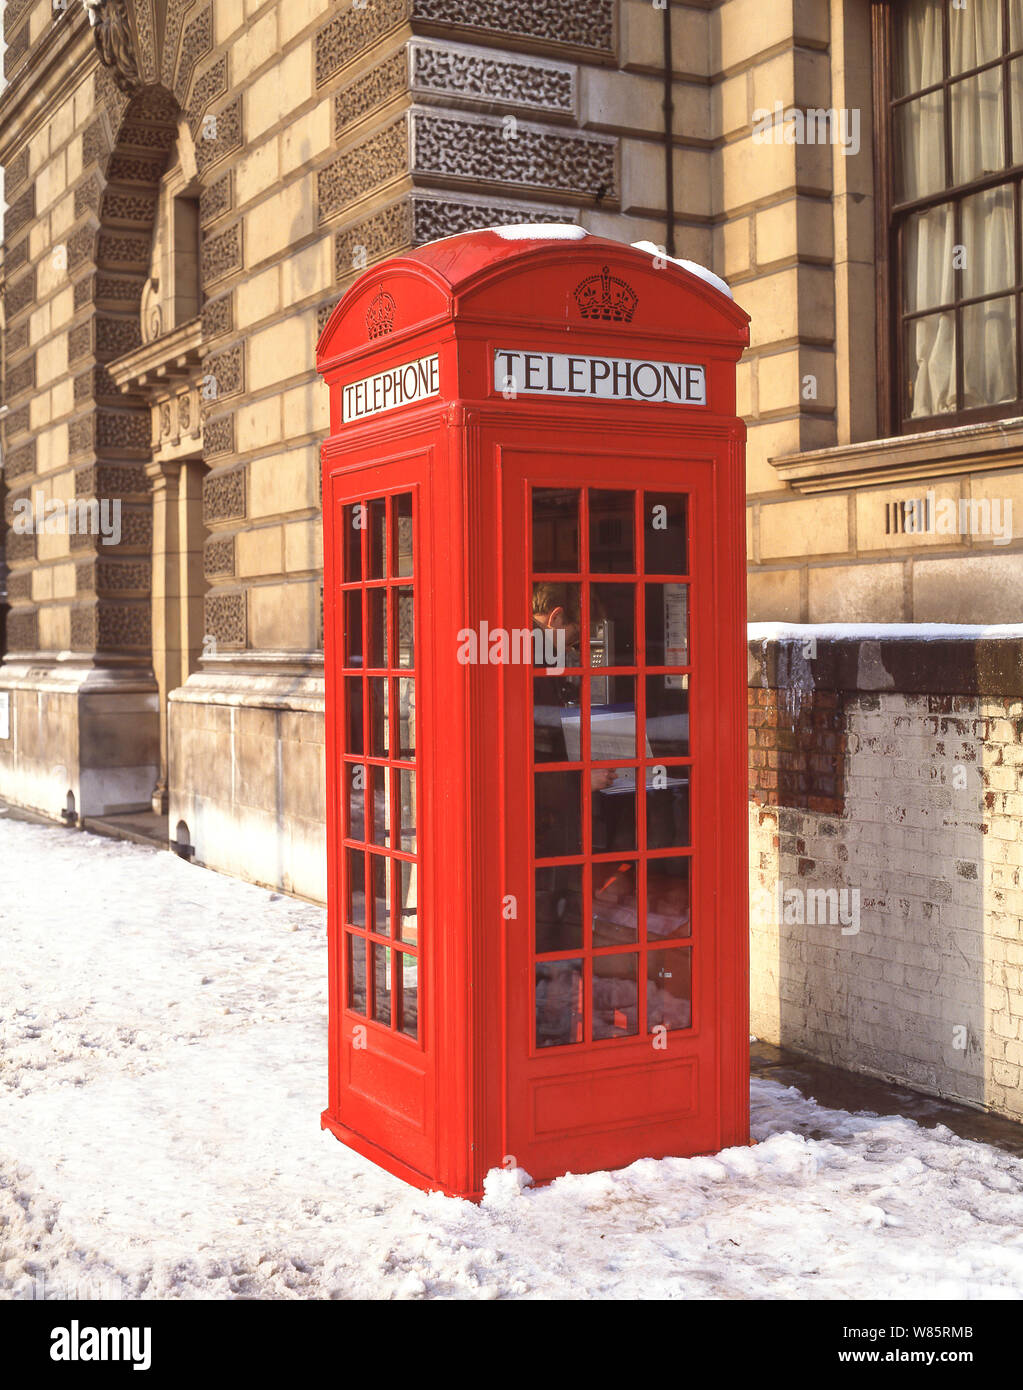 Teléfono rojo tradicional kiosco en invierno, la nieve, la Plaza del Parlamento, la ciudad de Westminster, Greater London, England, Reino Unido Foto de stock